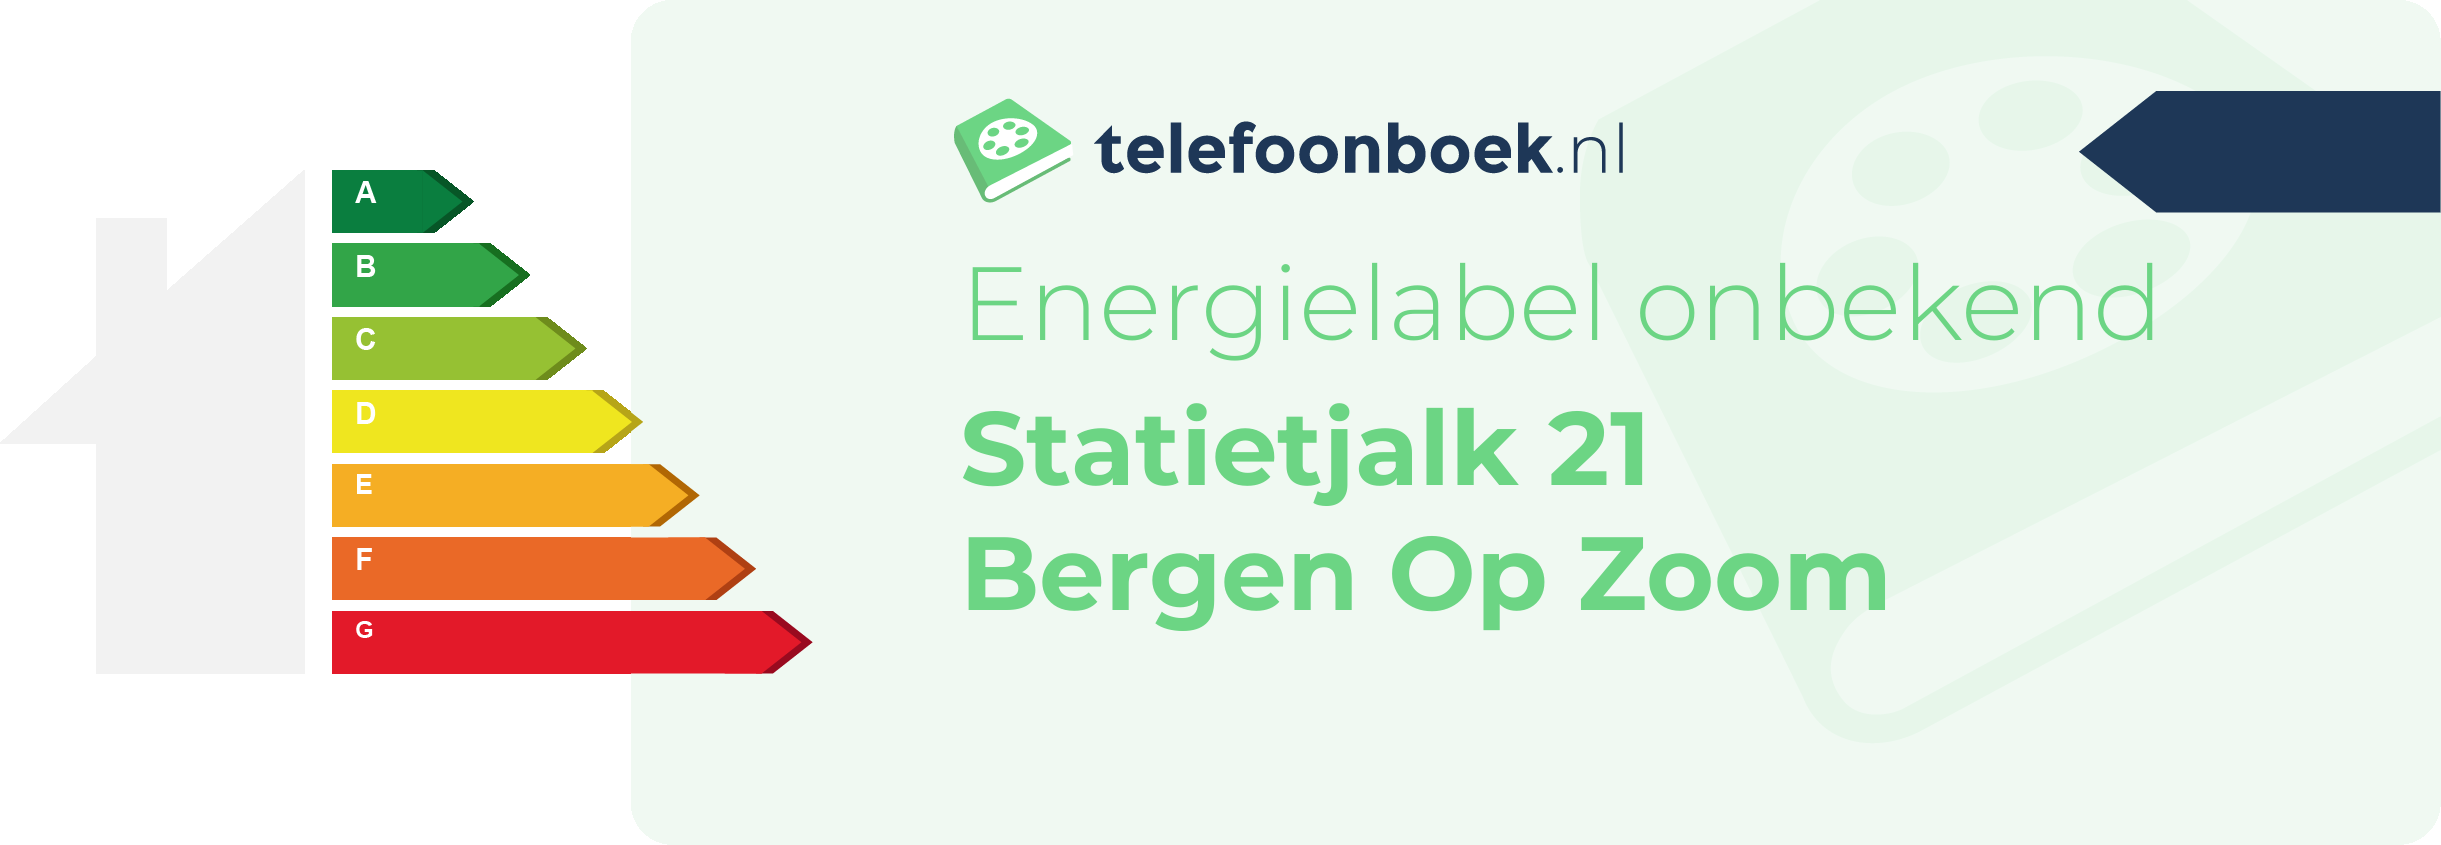 Energielabel Statietjalk 21 Bergen Op Zoom